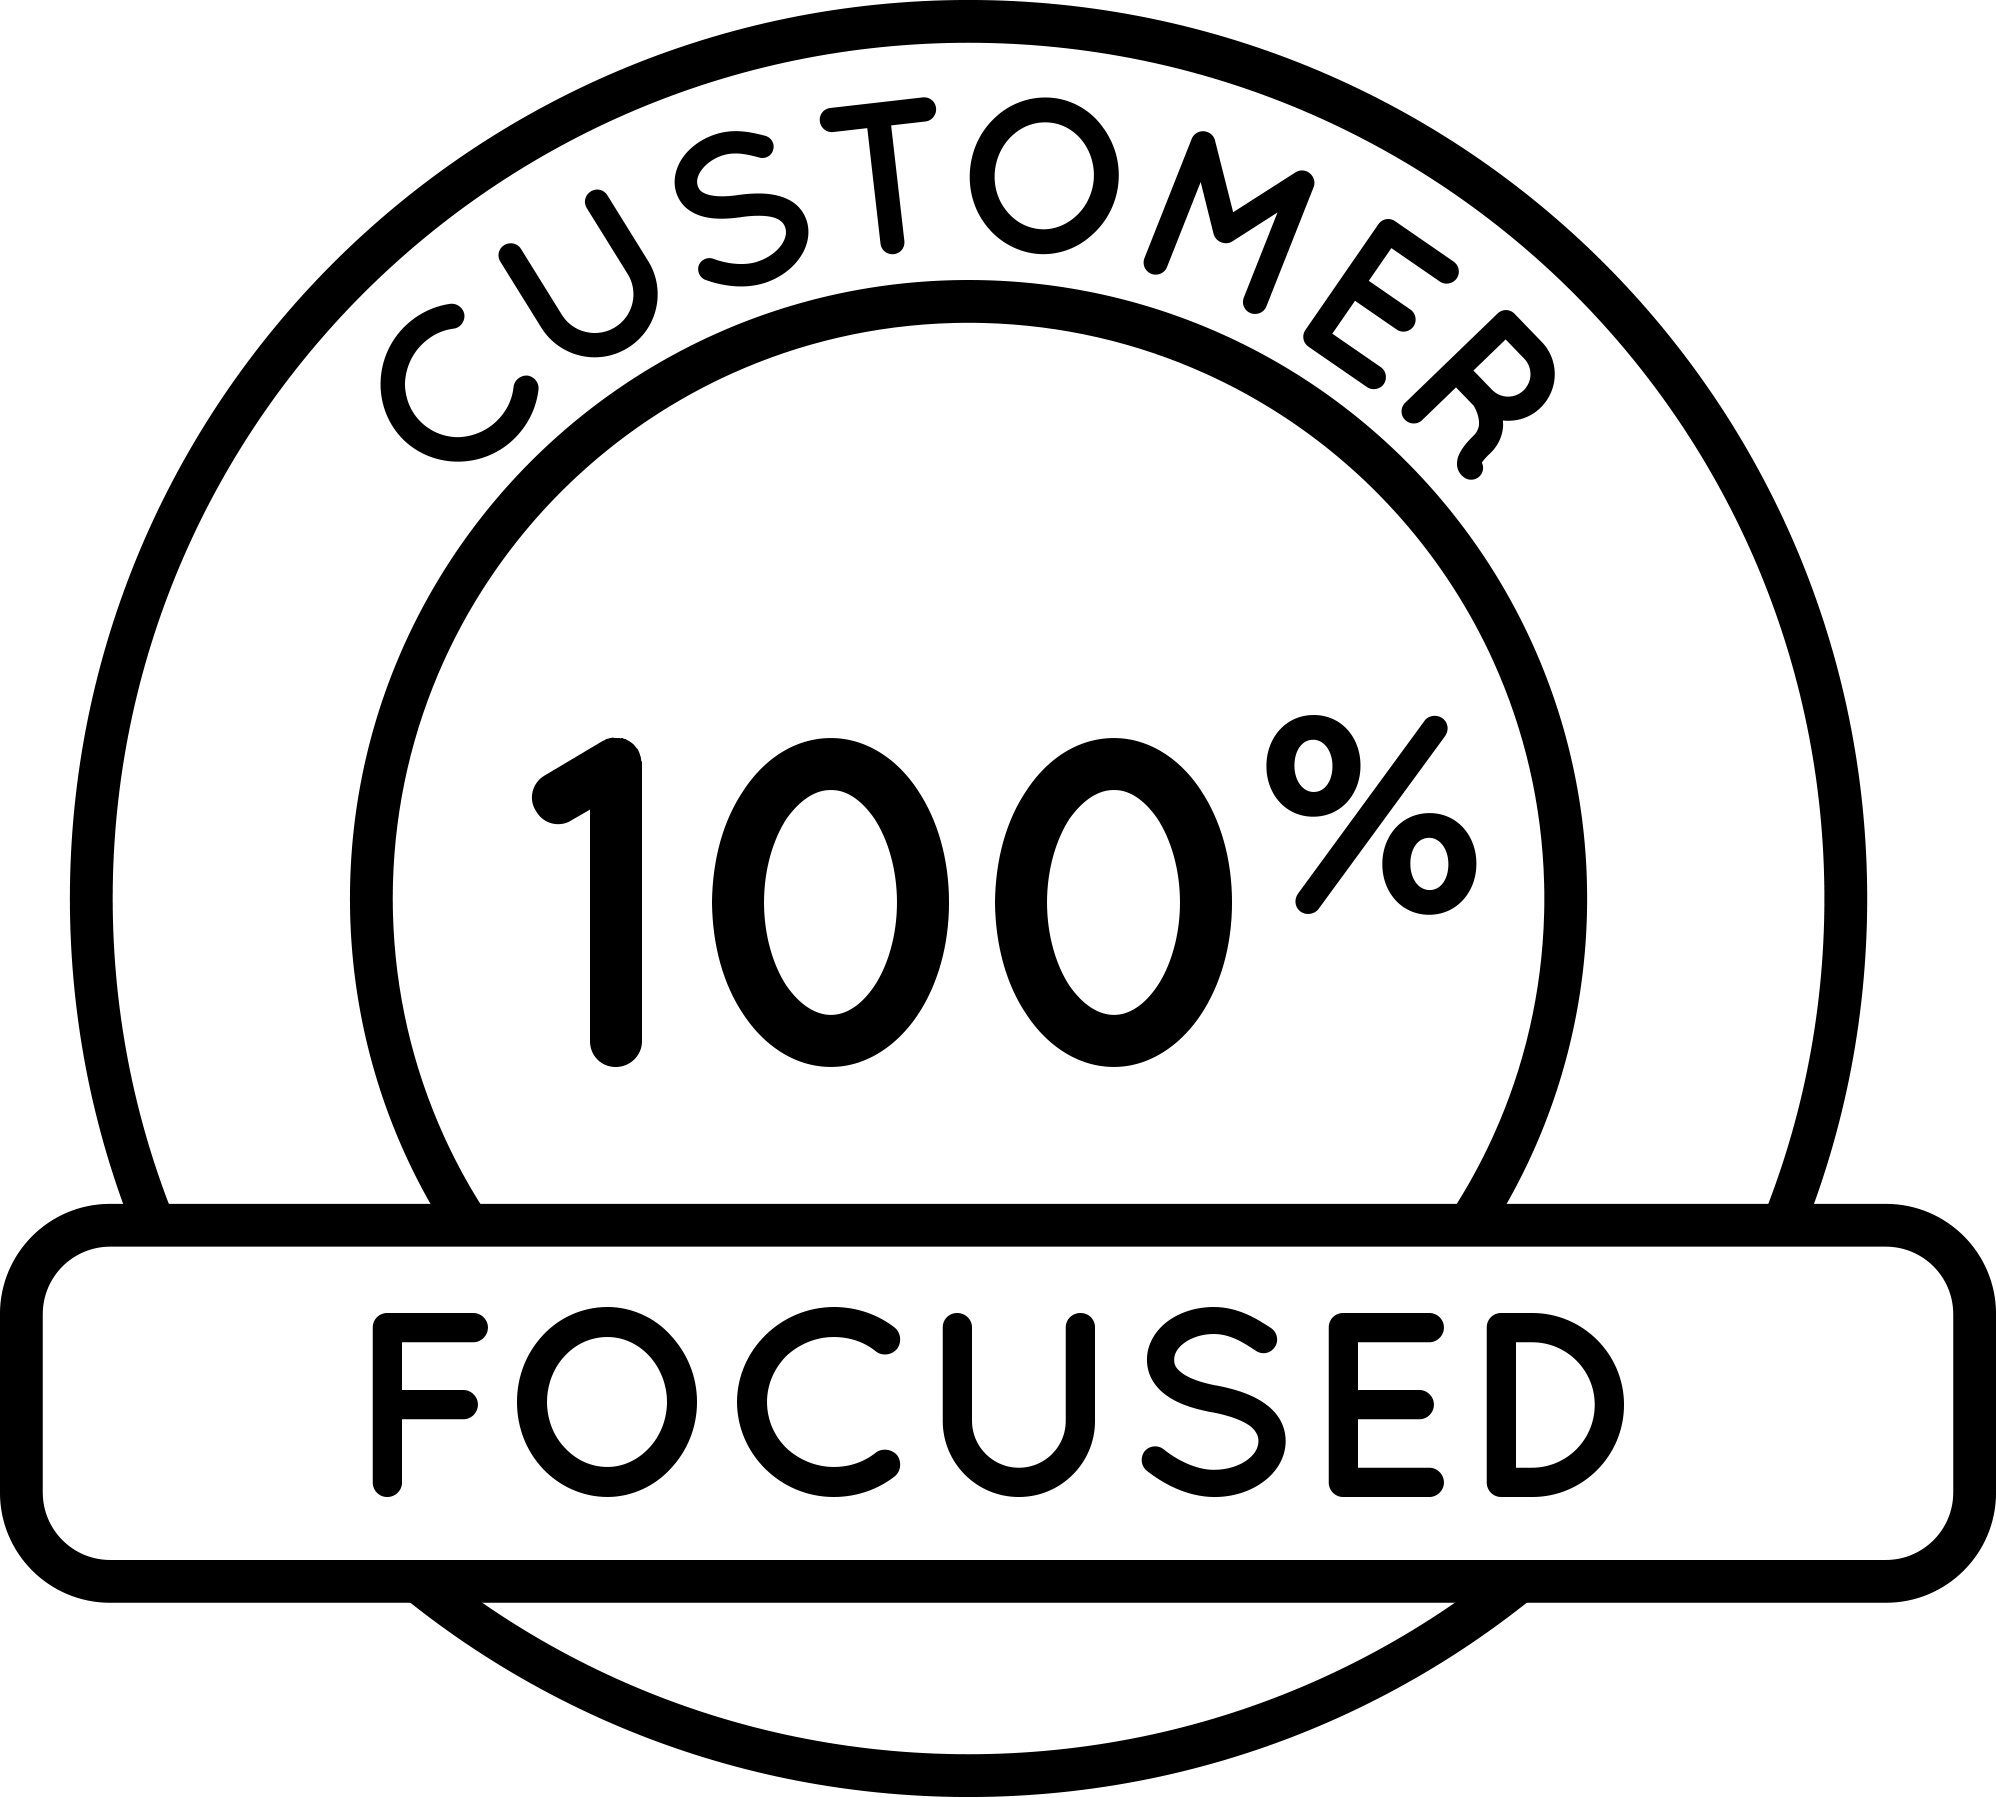 100% Customer Focused trust badge